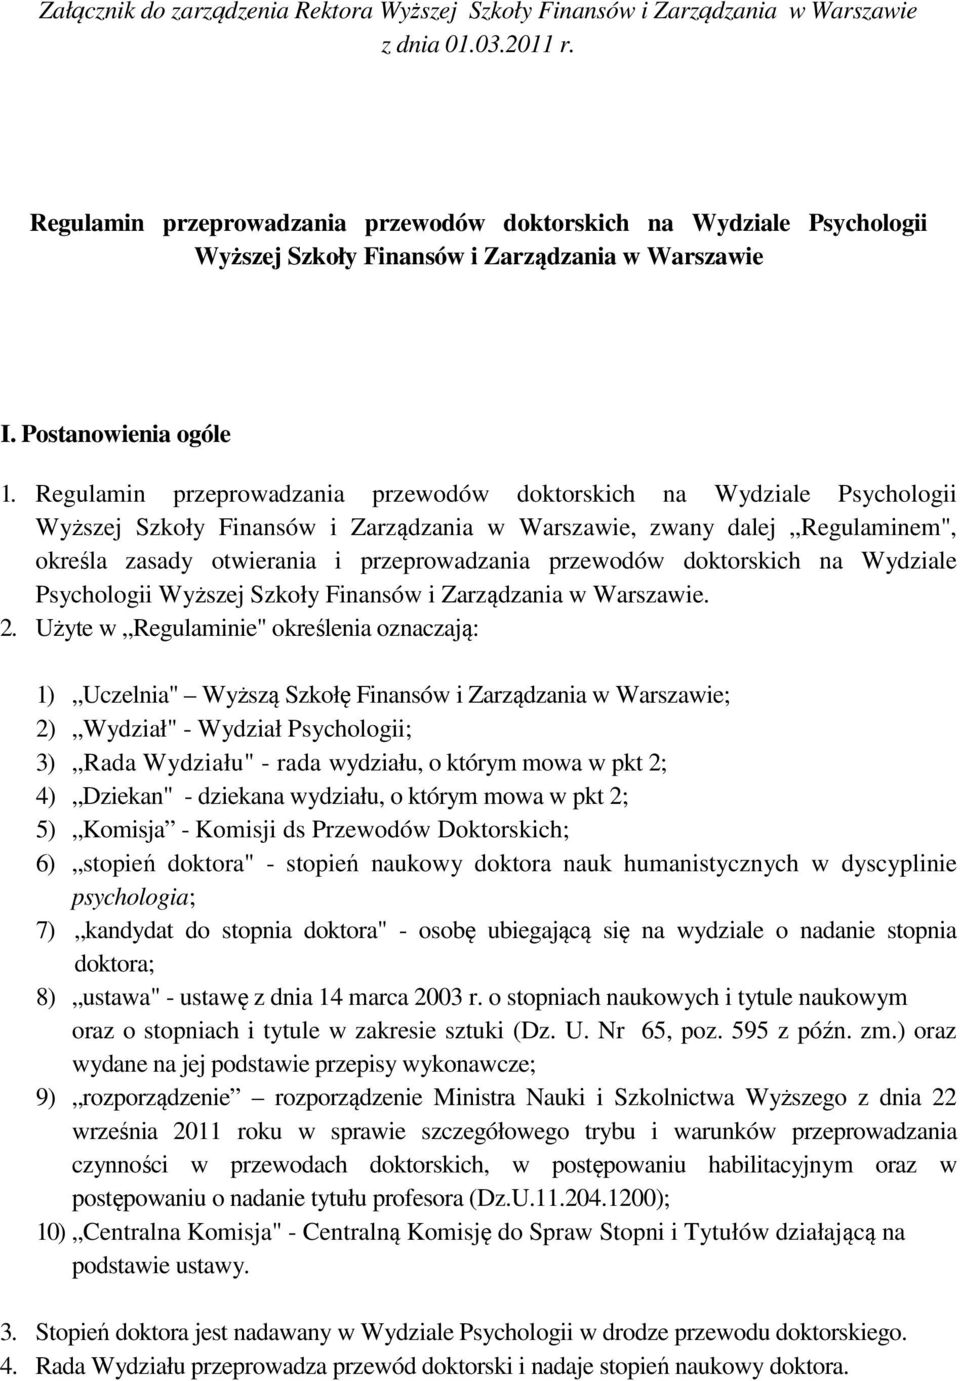 Regulamin przeprowadzania przewodów doktorskich na Wydziale Psychologii Wyższej Szkoły Finansów i Zarządzania w Warszawie, zwany dalej Regulaminem", określa zasady otwierania i przeprowadzania